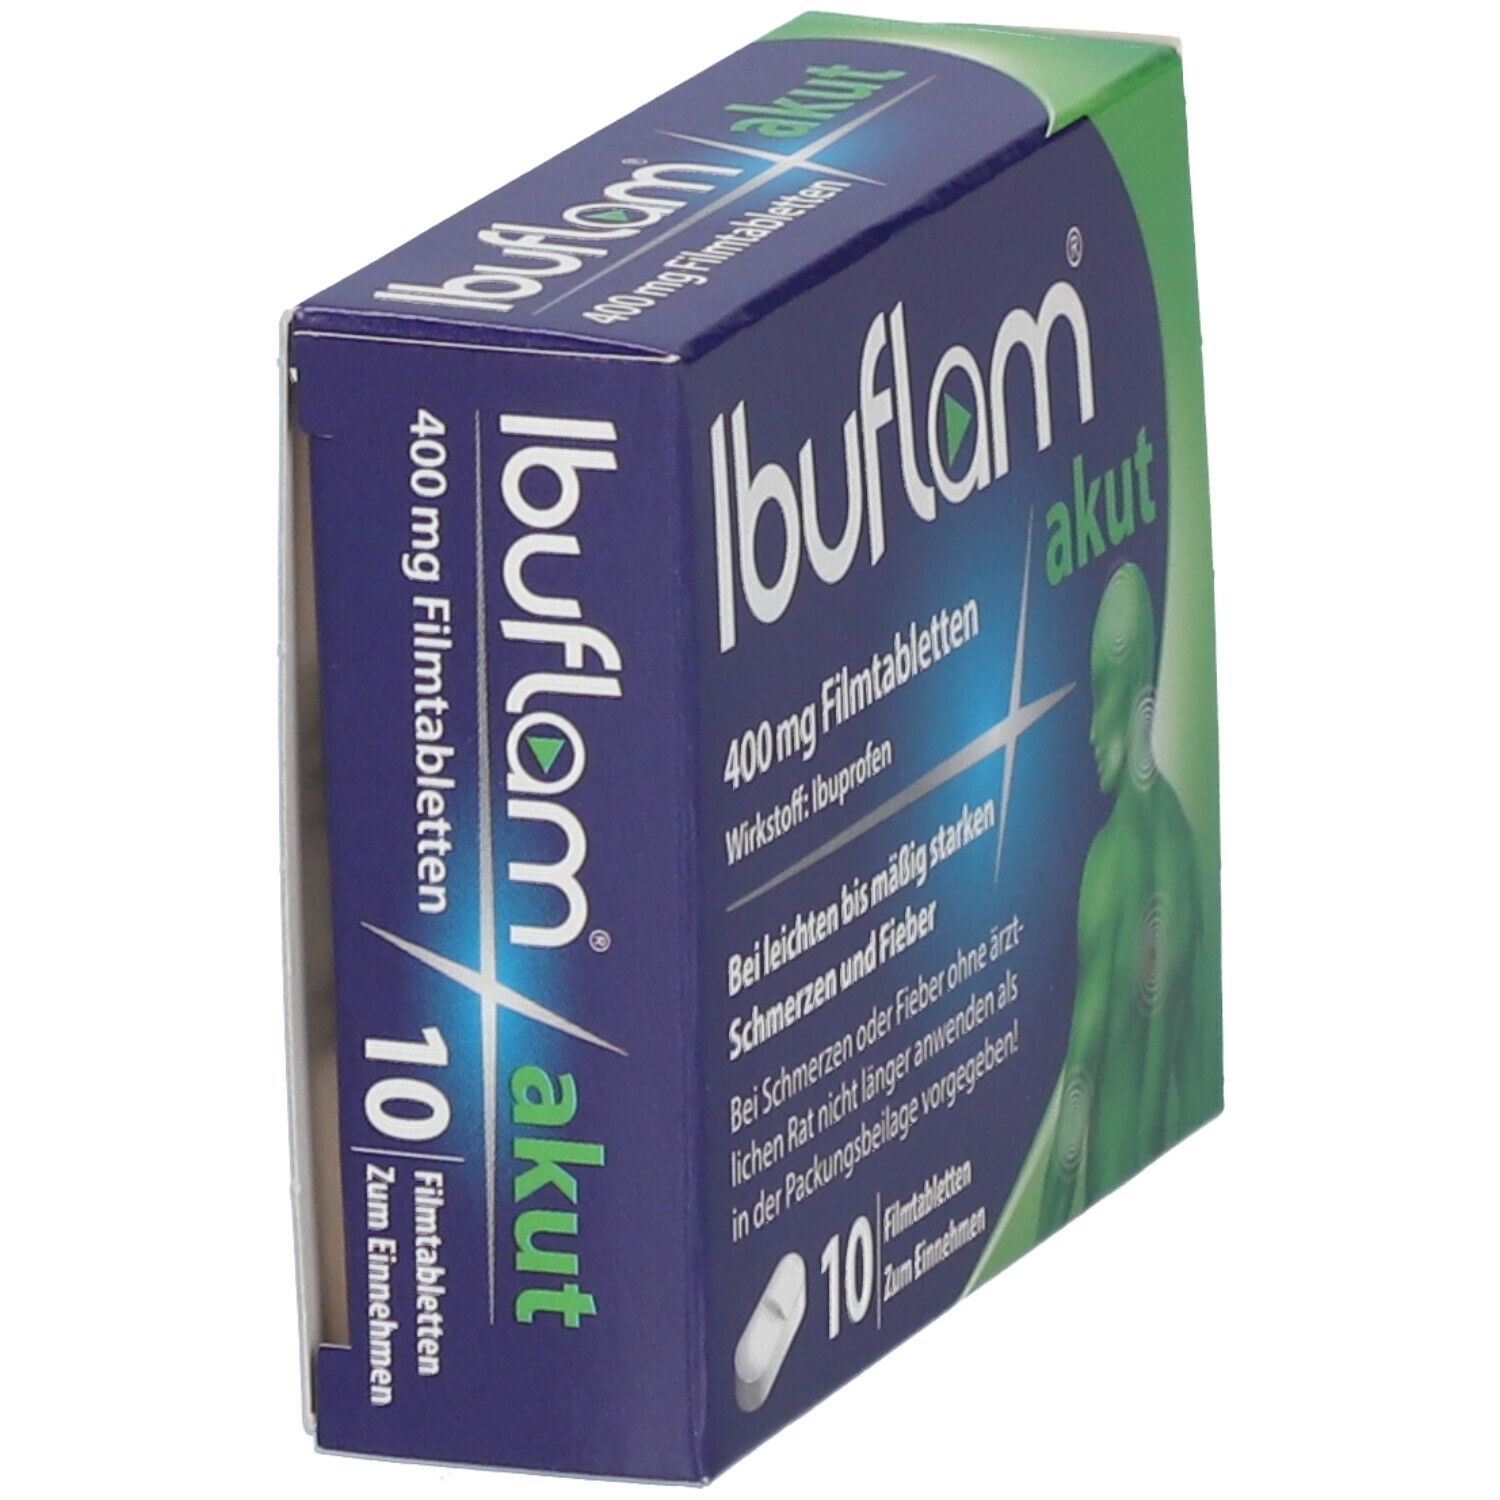 Ibuflam® akut, 400 mg Filmtabletten mit Ibuprofen, bei leichten bis mäßig starken Schmerzen und Fieber